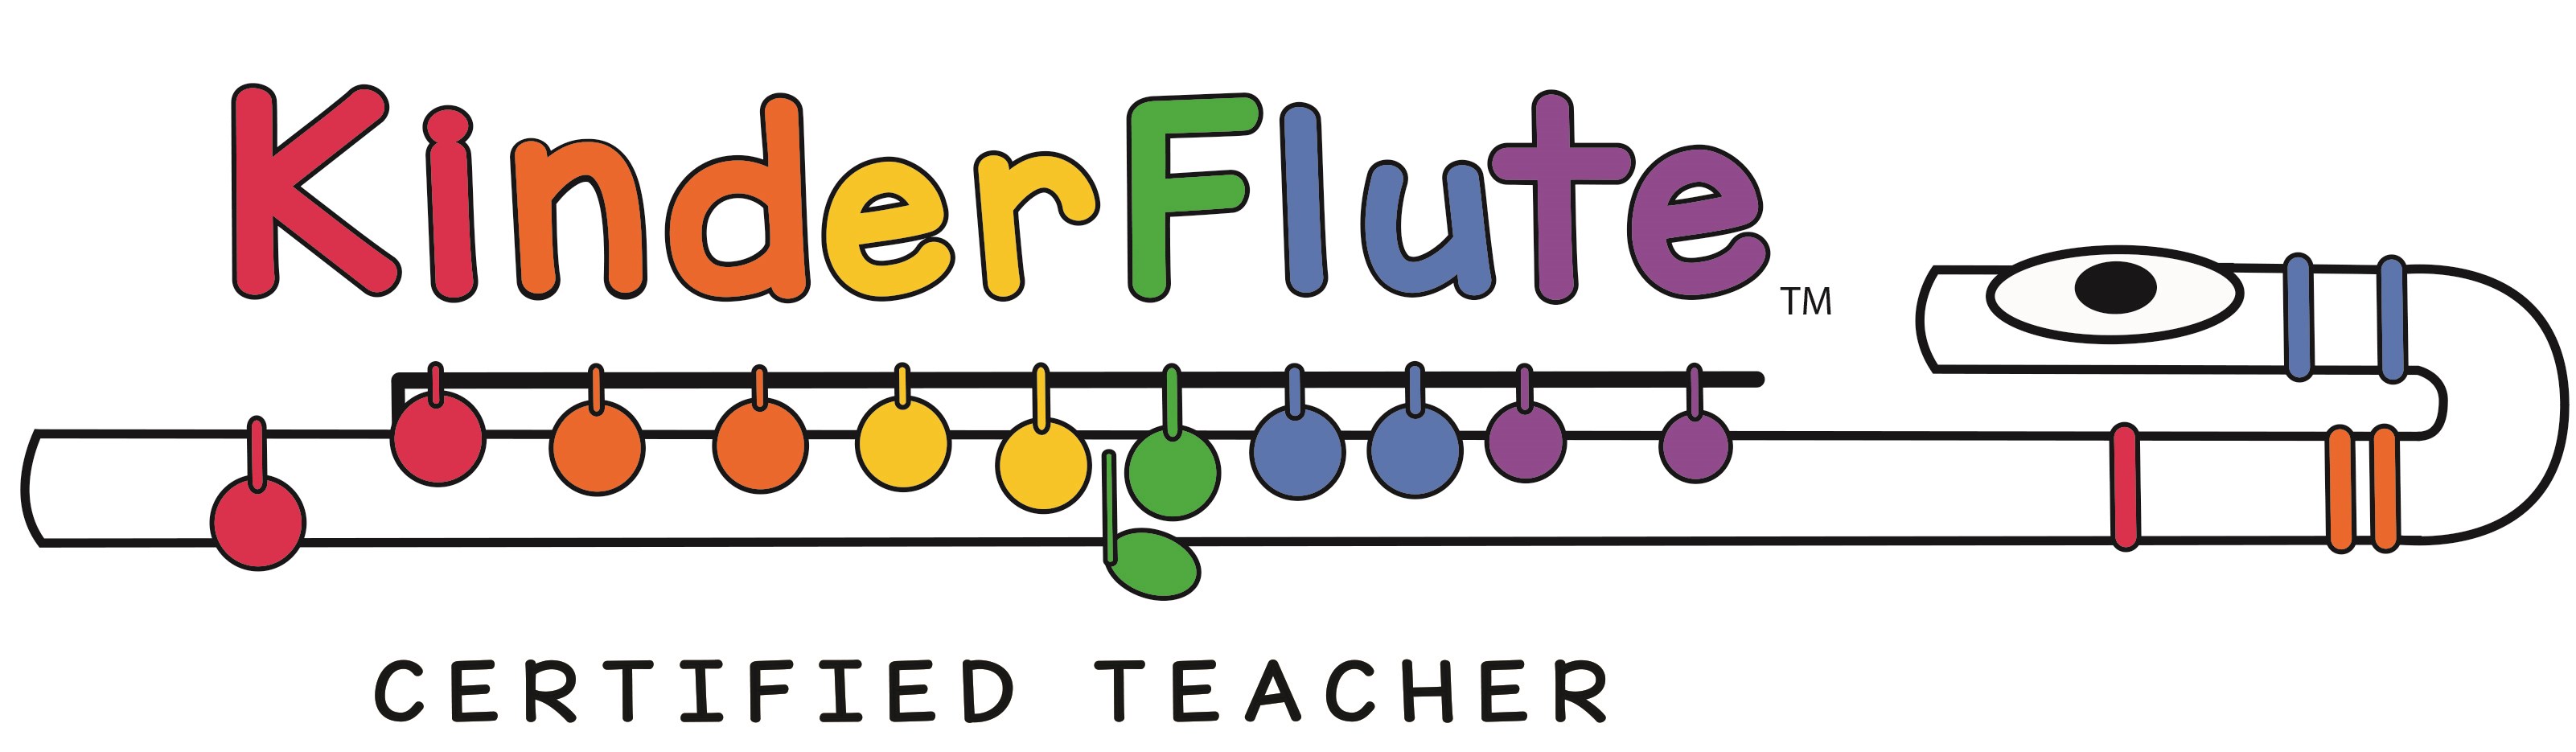 Final Kinderflute Logo 2019 certified teacher.jpg